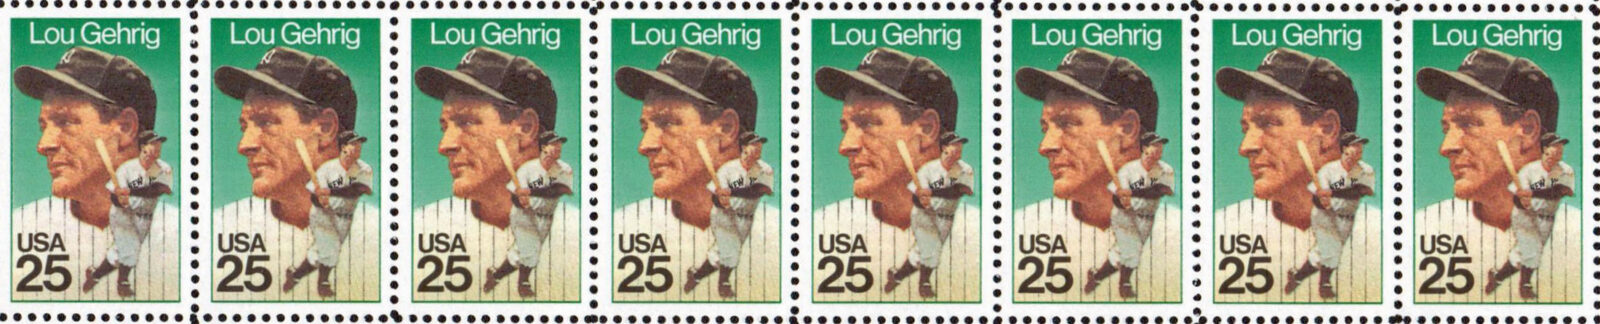 Lou Gehrig, 1989 U.S. Postage Stamp header